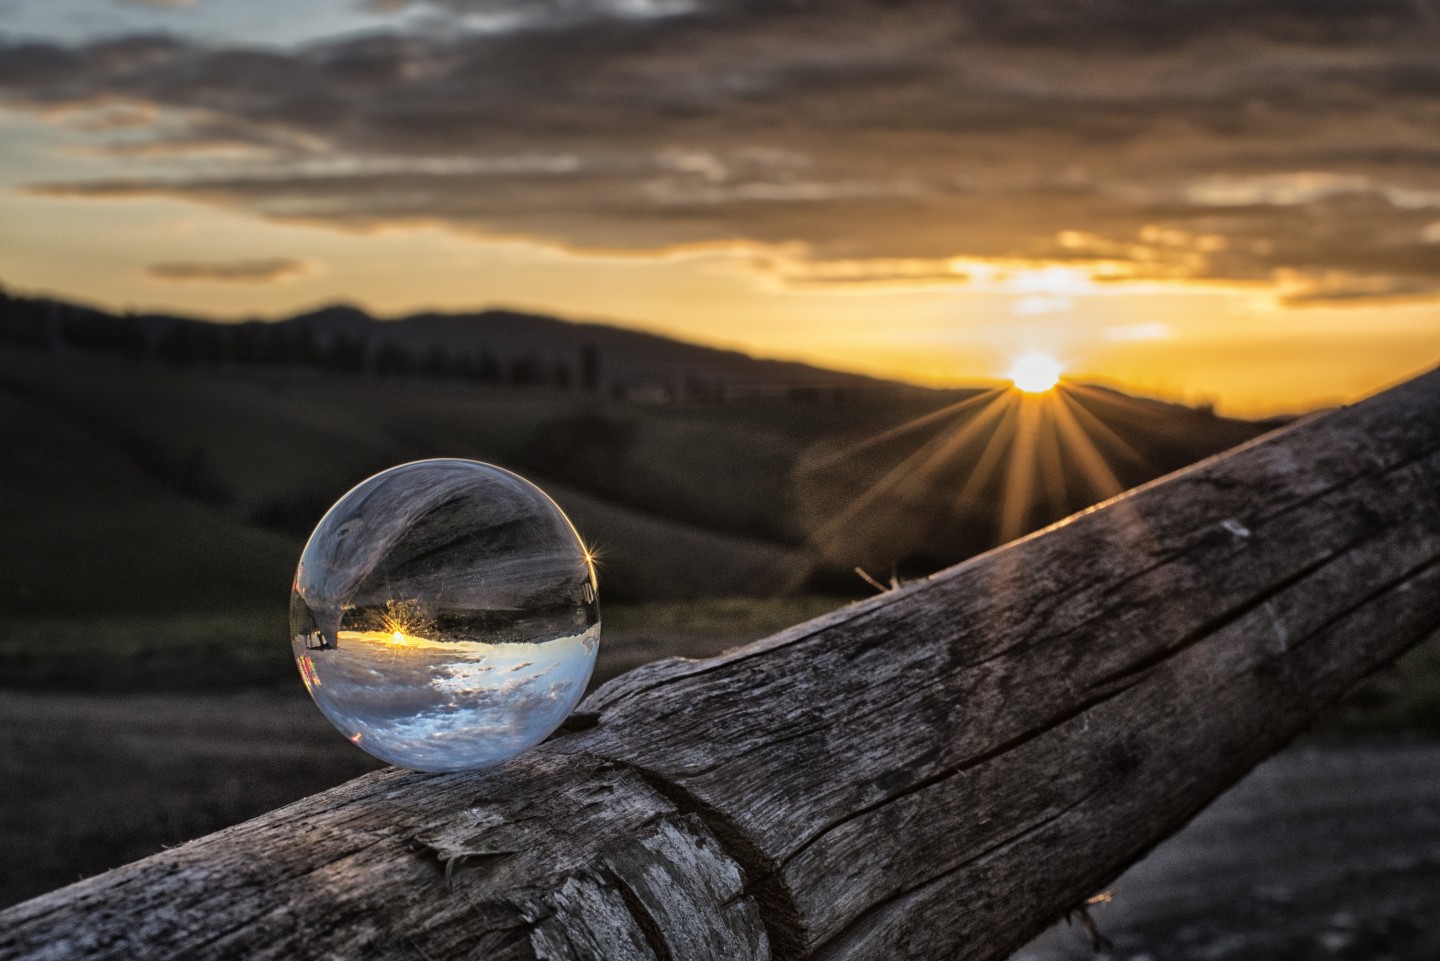 Tramonto sulle colline toscane con una sfera di vetro